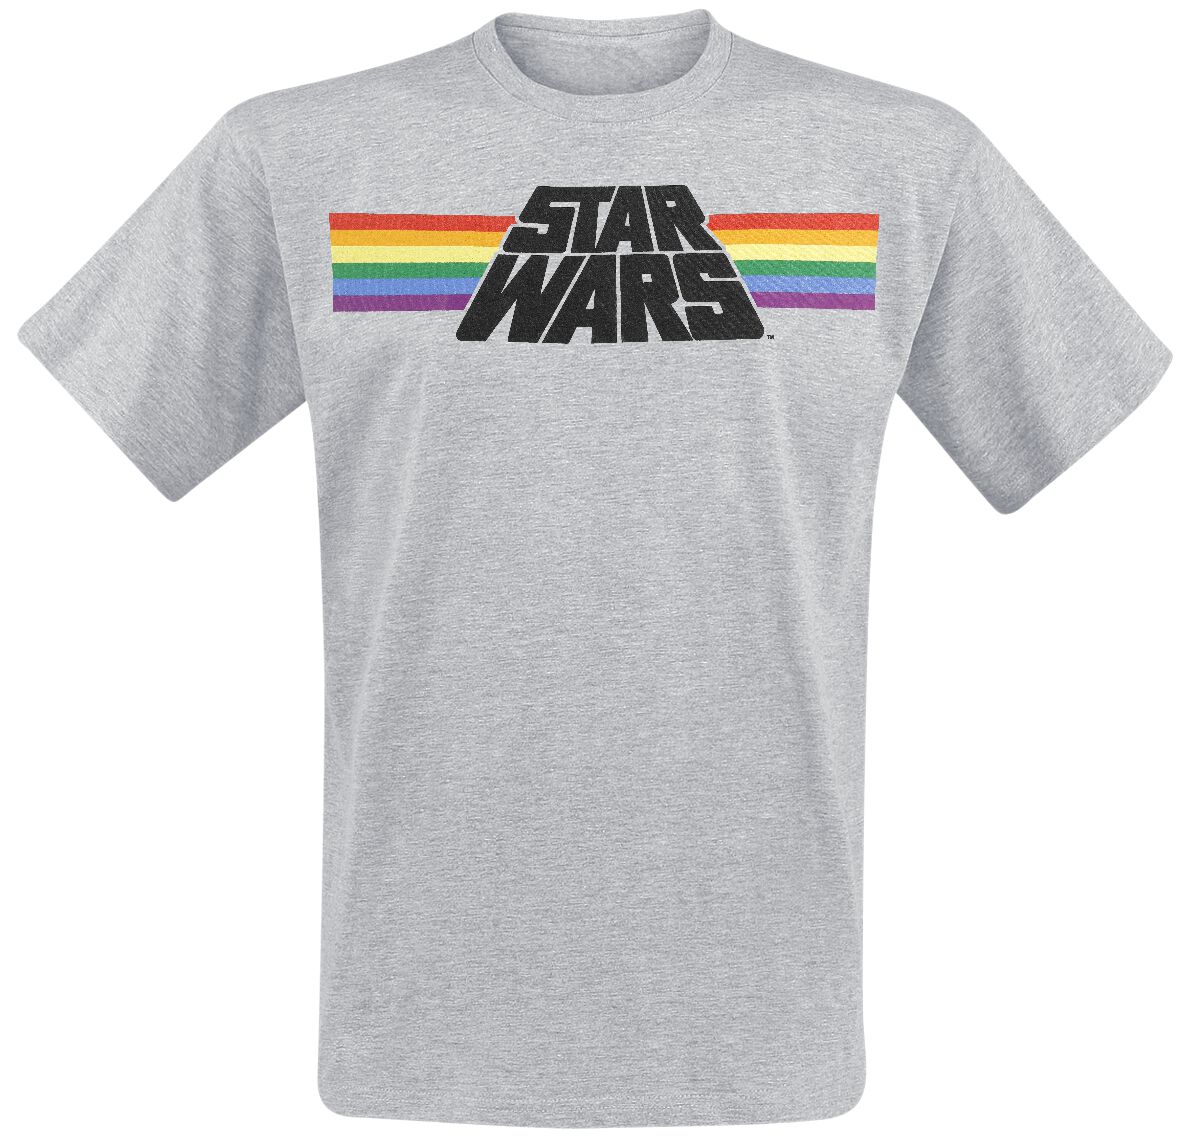 Star Wars T-Shirt - Classic Rainbow - M bis 3XL - für Männer - Größe M - grau meliert  - Lizenzierter Fanartikel